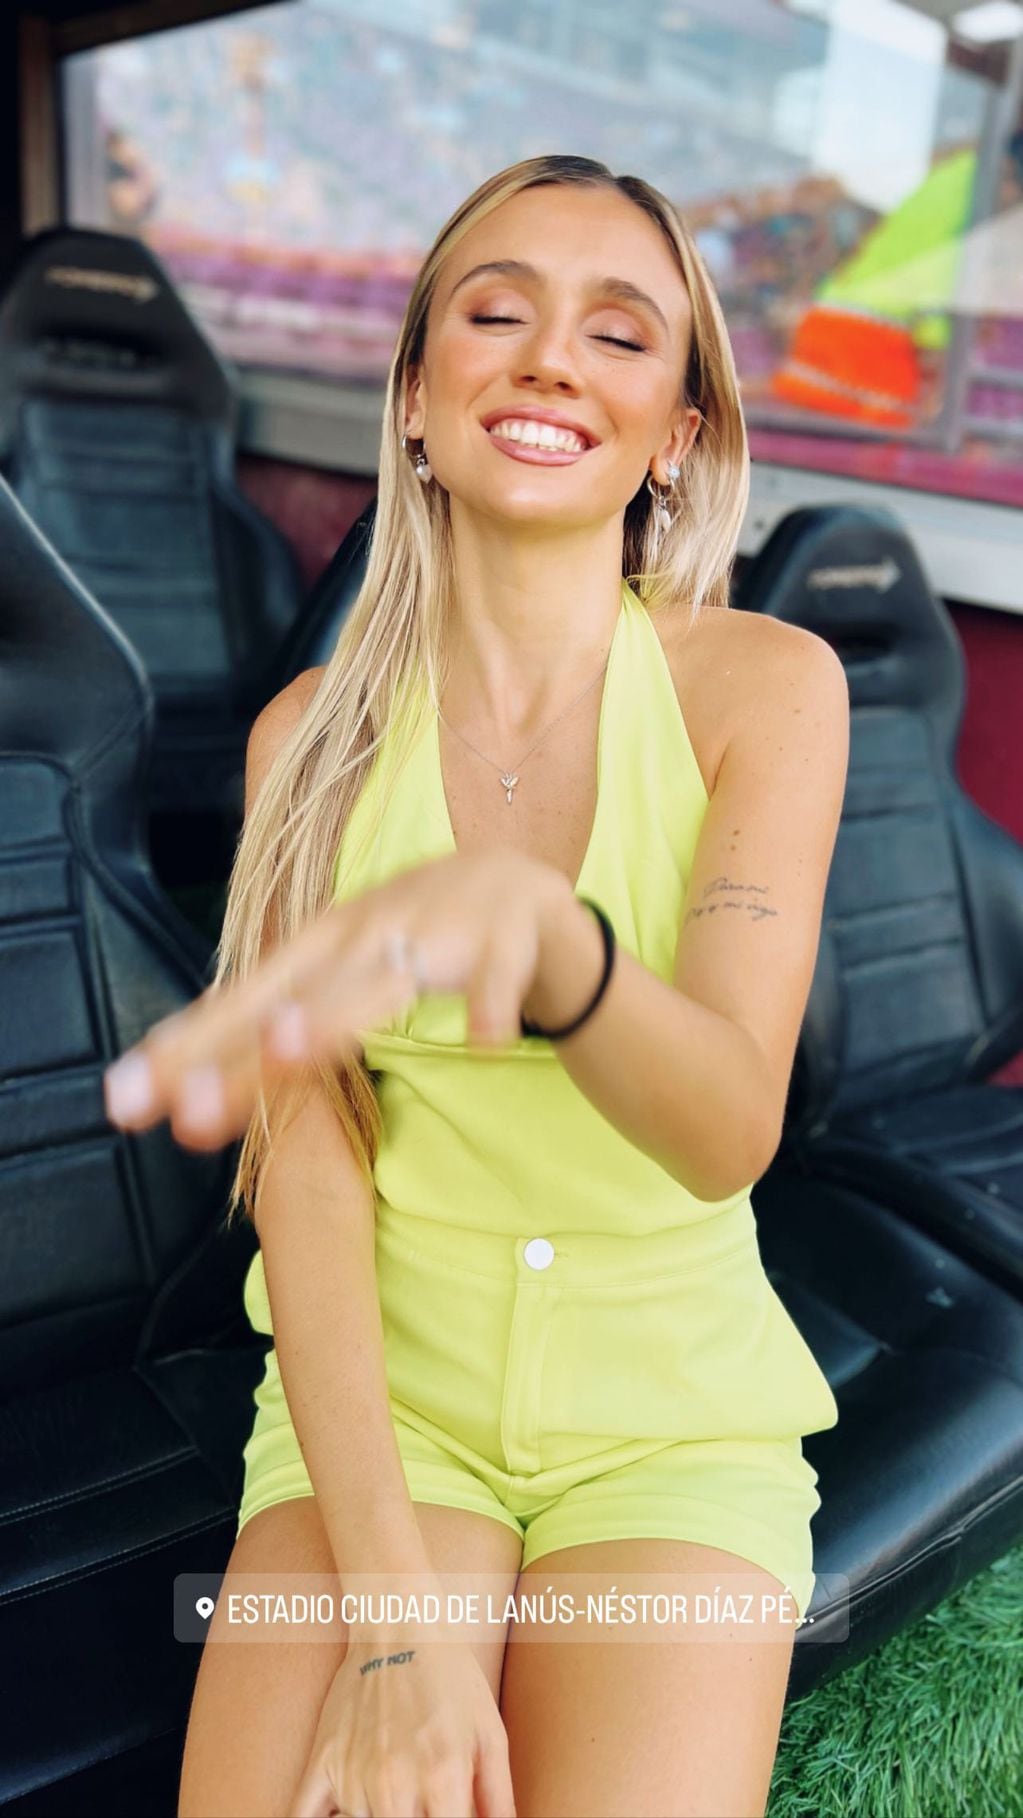 Morena Beltrán cautivó con su sonrisa y belleza a sus fans de Instagram al lucir un cat suit amarillo.